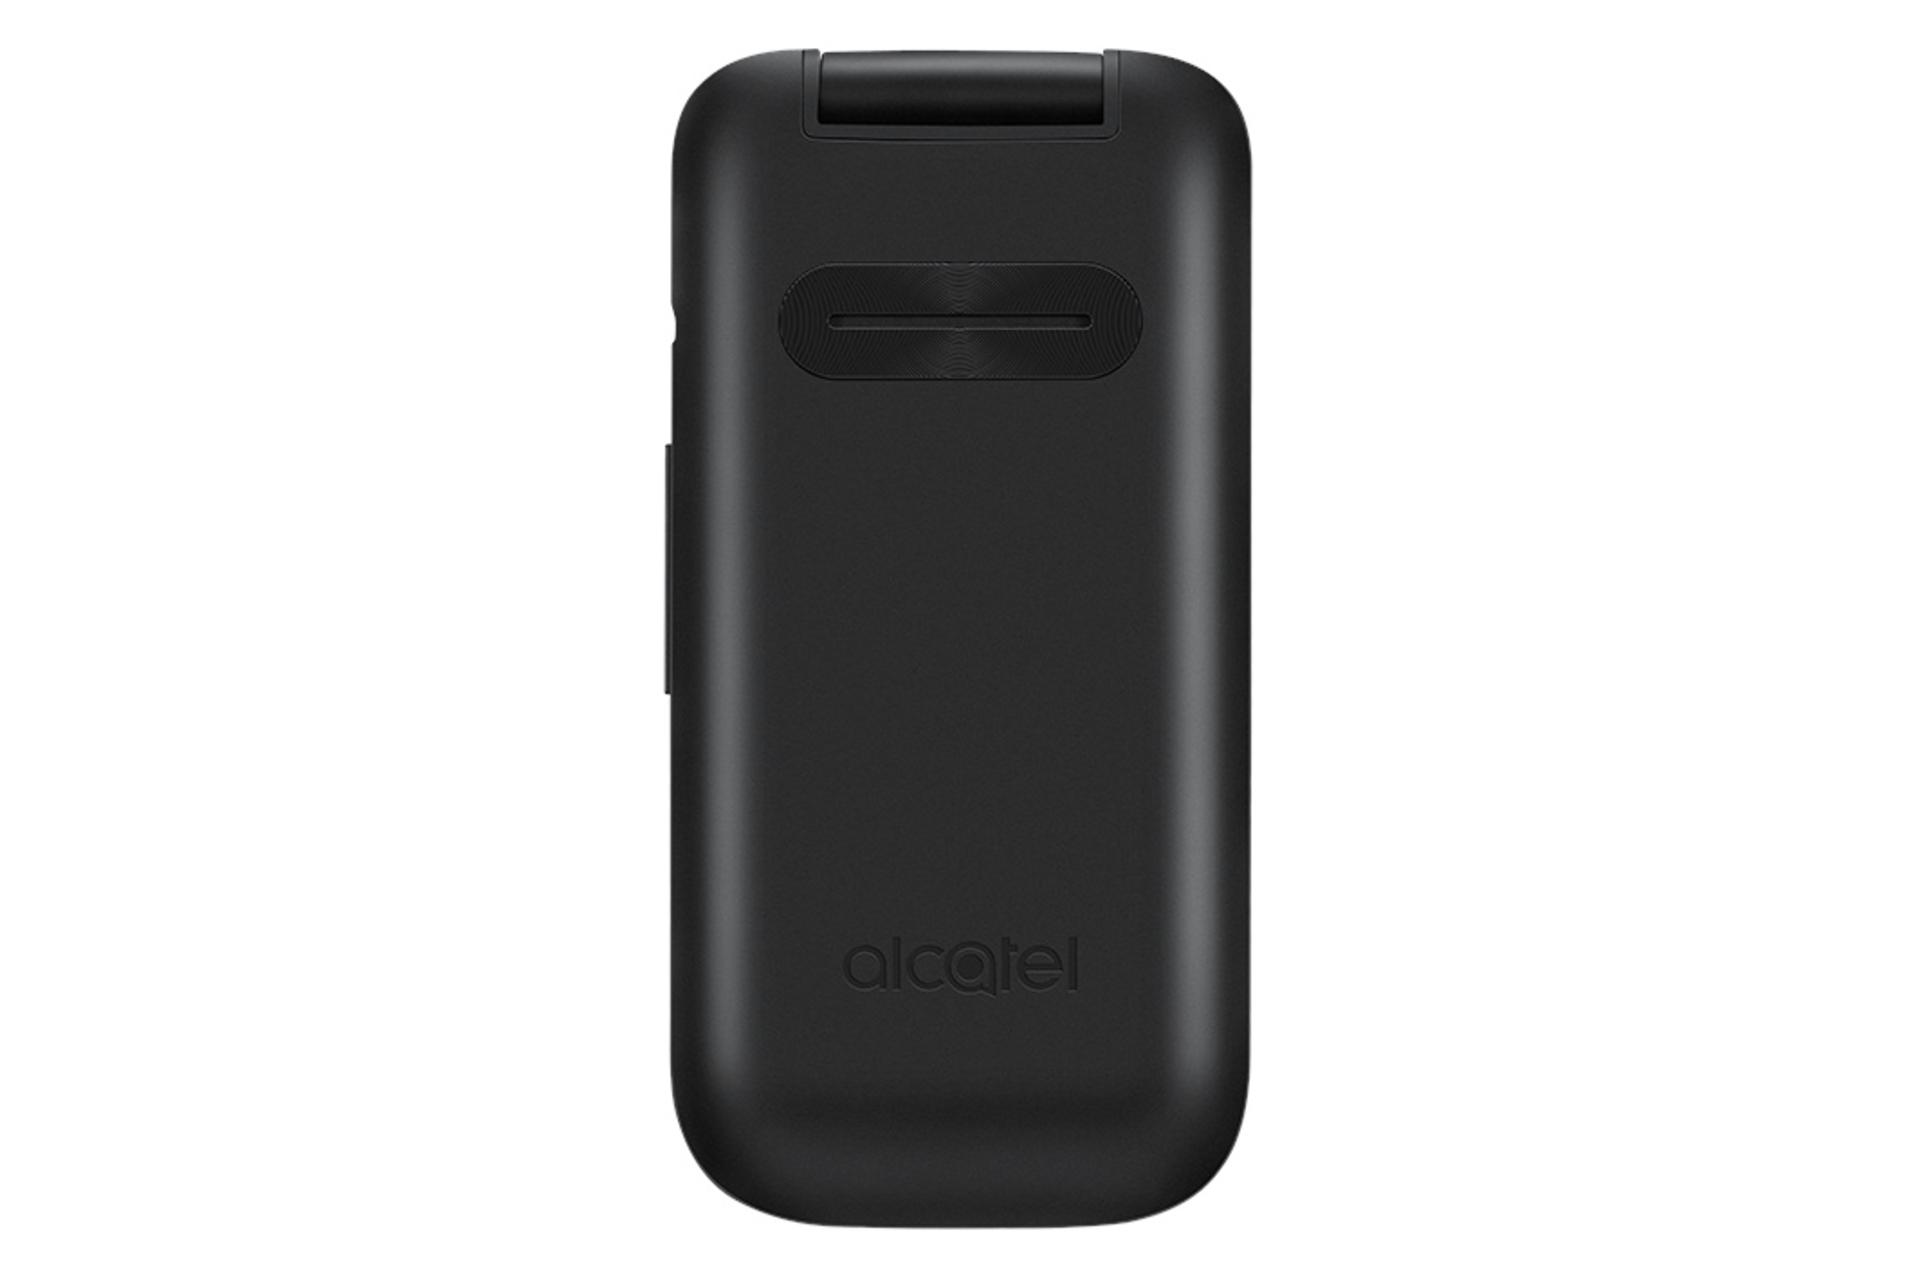 پنل جلو گوشی موبایل آلکاتل alcatel 2053 مشکی